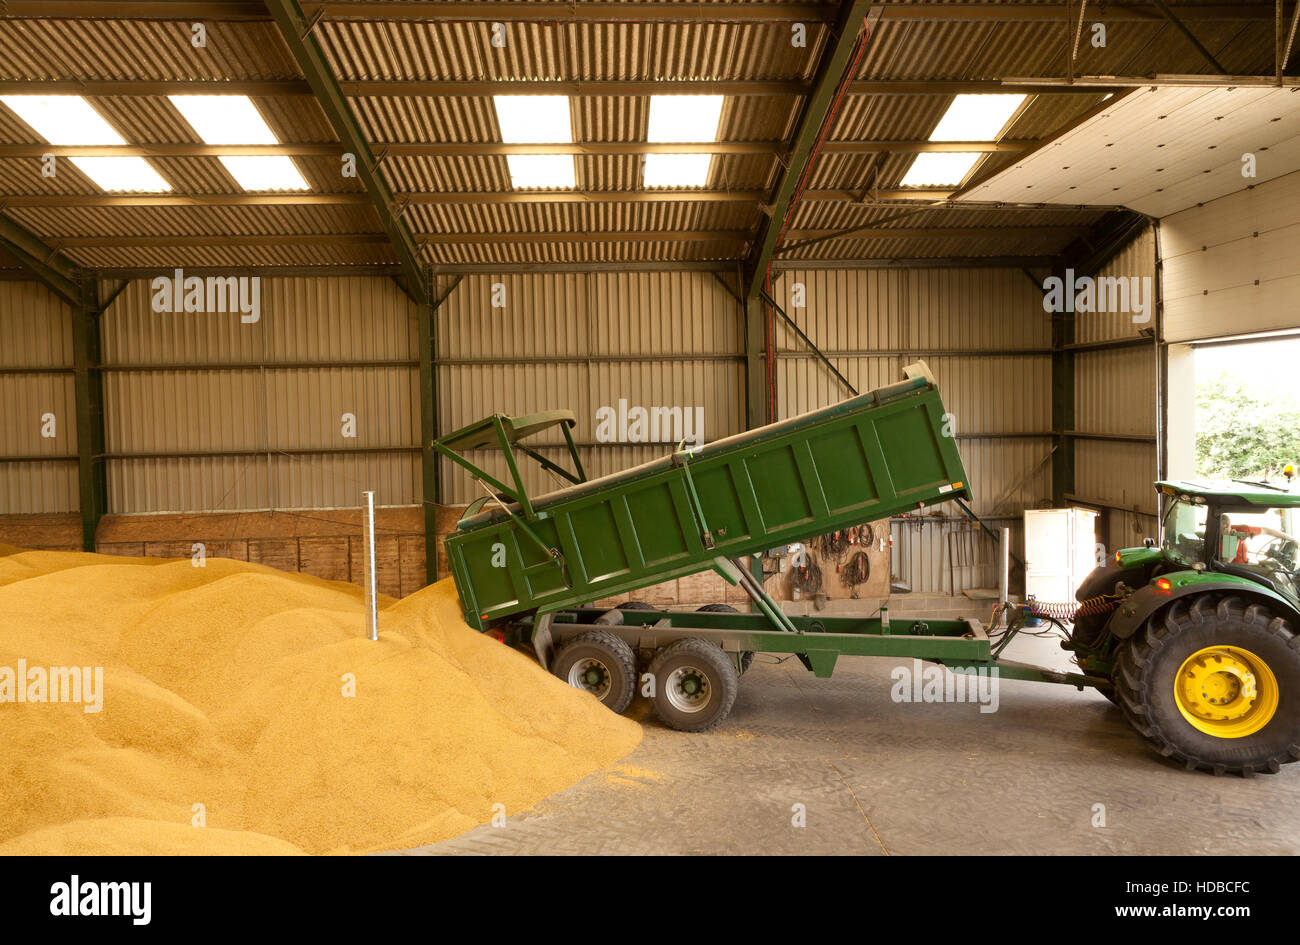 Un basculement de remorque agricole de maïs dans une grange de stockage Banque D'Images